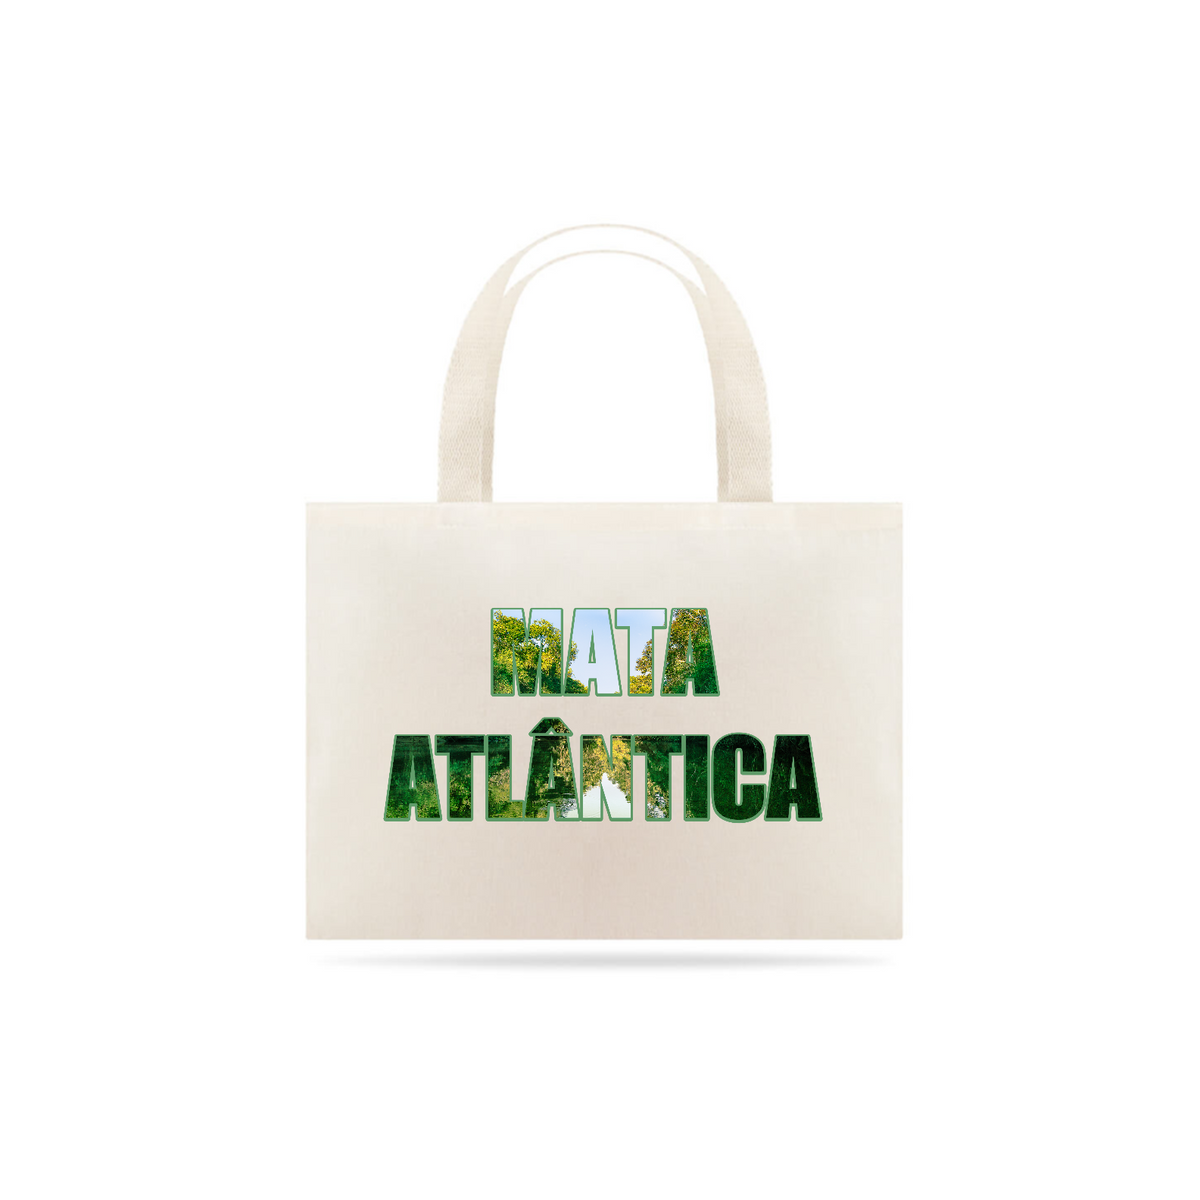 Nome do produto: Eco bag - Frases criativas – Mata atlântica